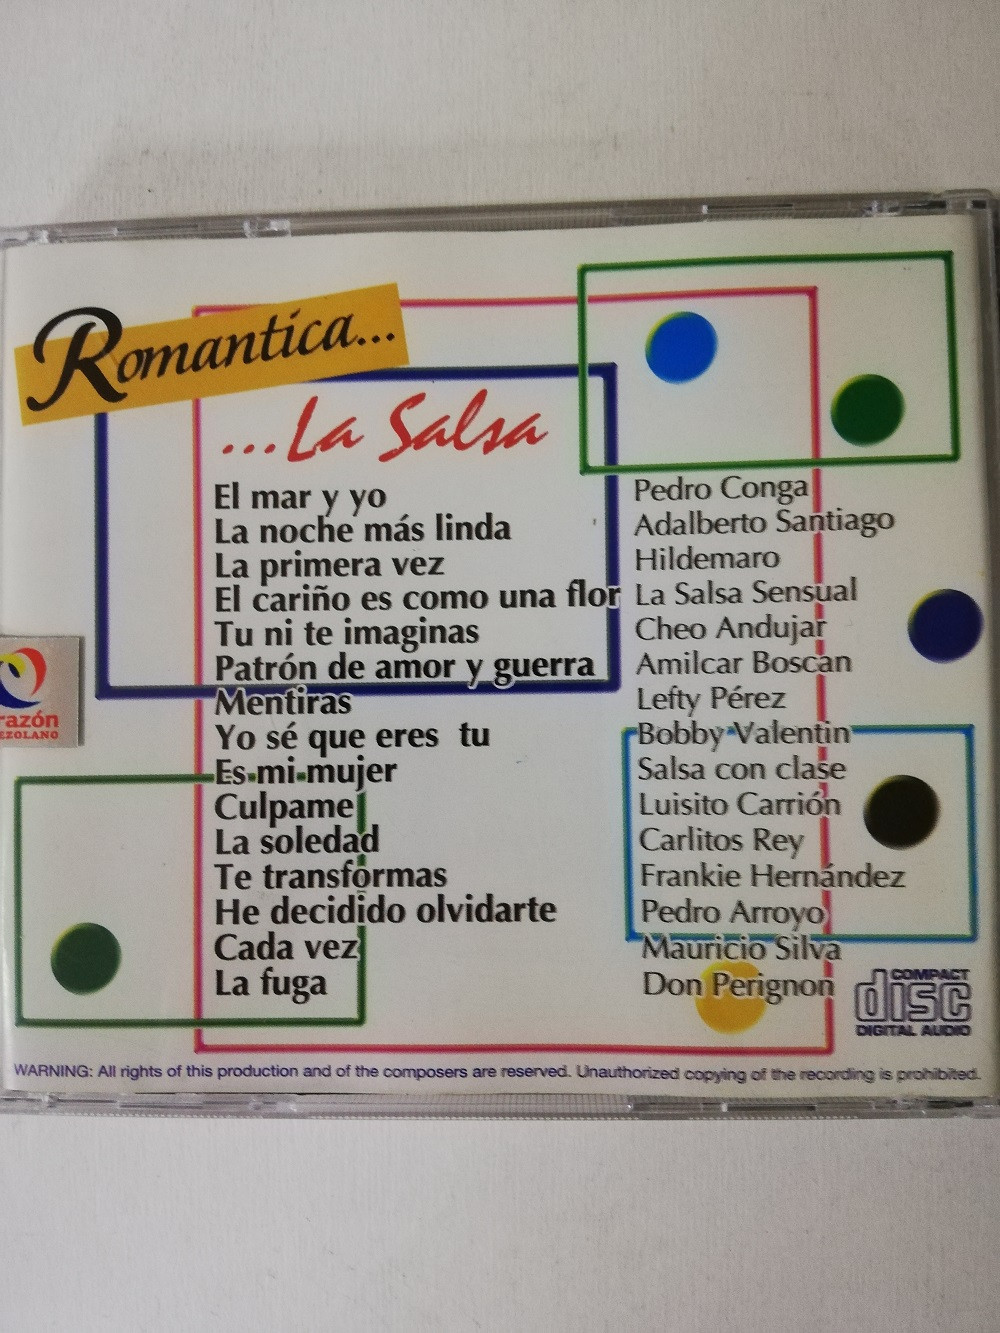 Imagen CD ROMÁNTICA...LA SALSA - ARTISTAS VARIOS 2